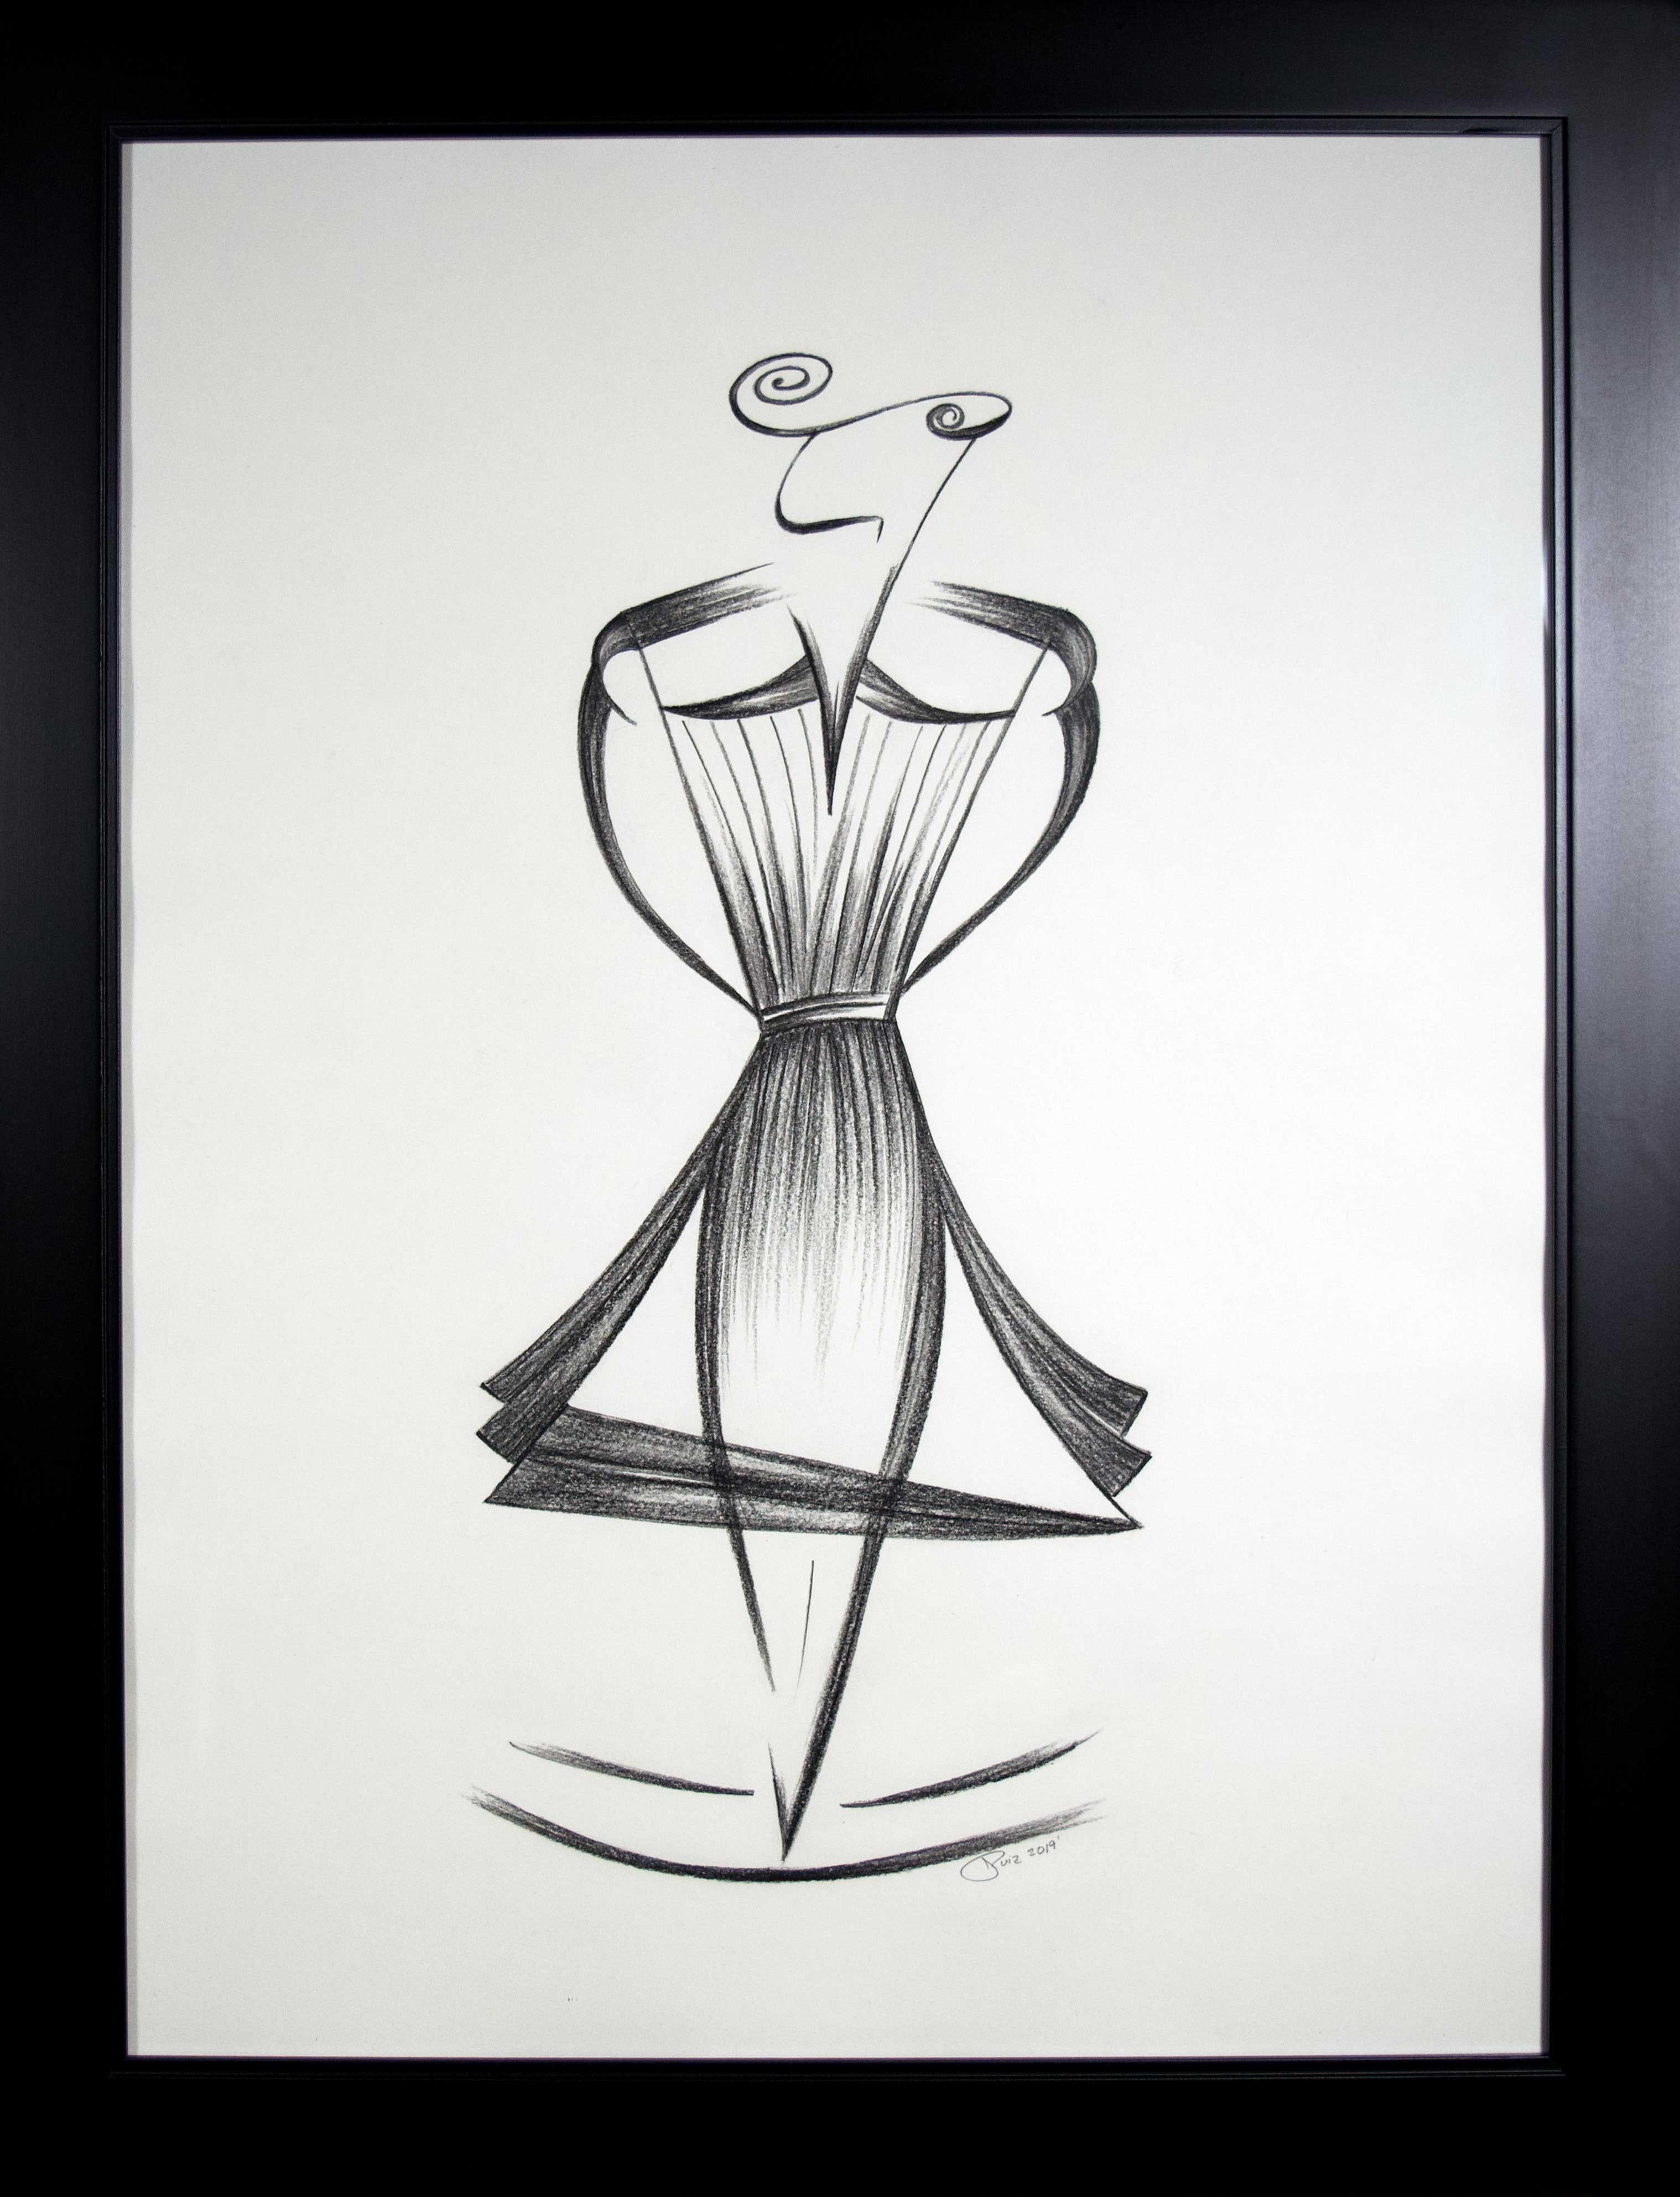 Jorge Ruiz-Martinez Figurative Art – Mid-Century Art Deco Minimalismus Schwarz-Weiß- weibliche Figur, lateinamerikanische Künstlerin, signiert